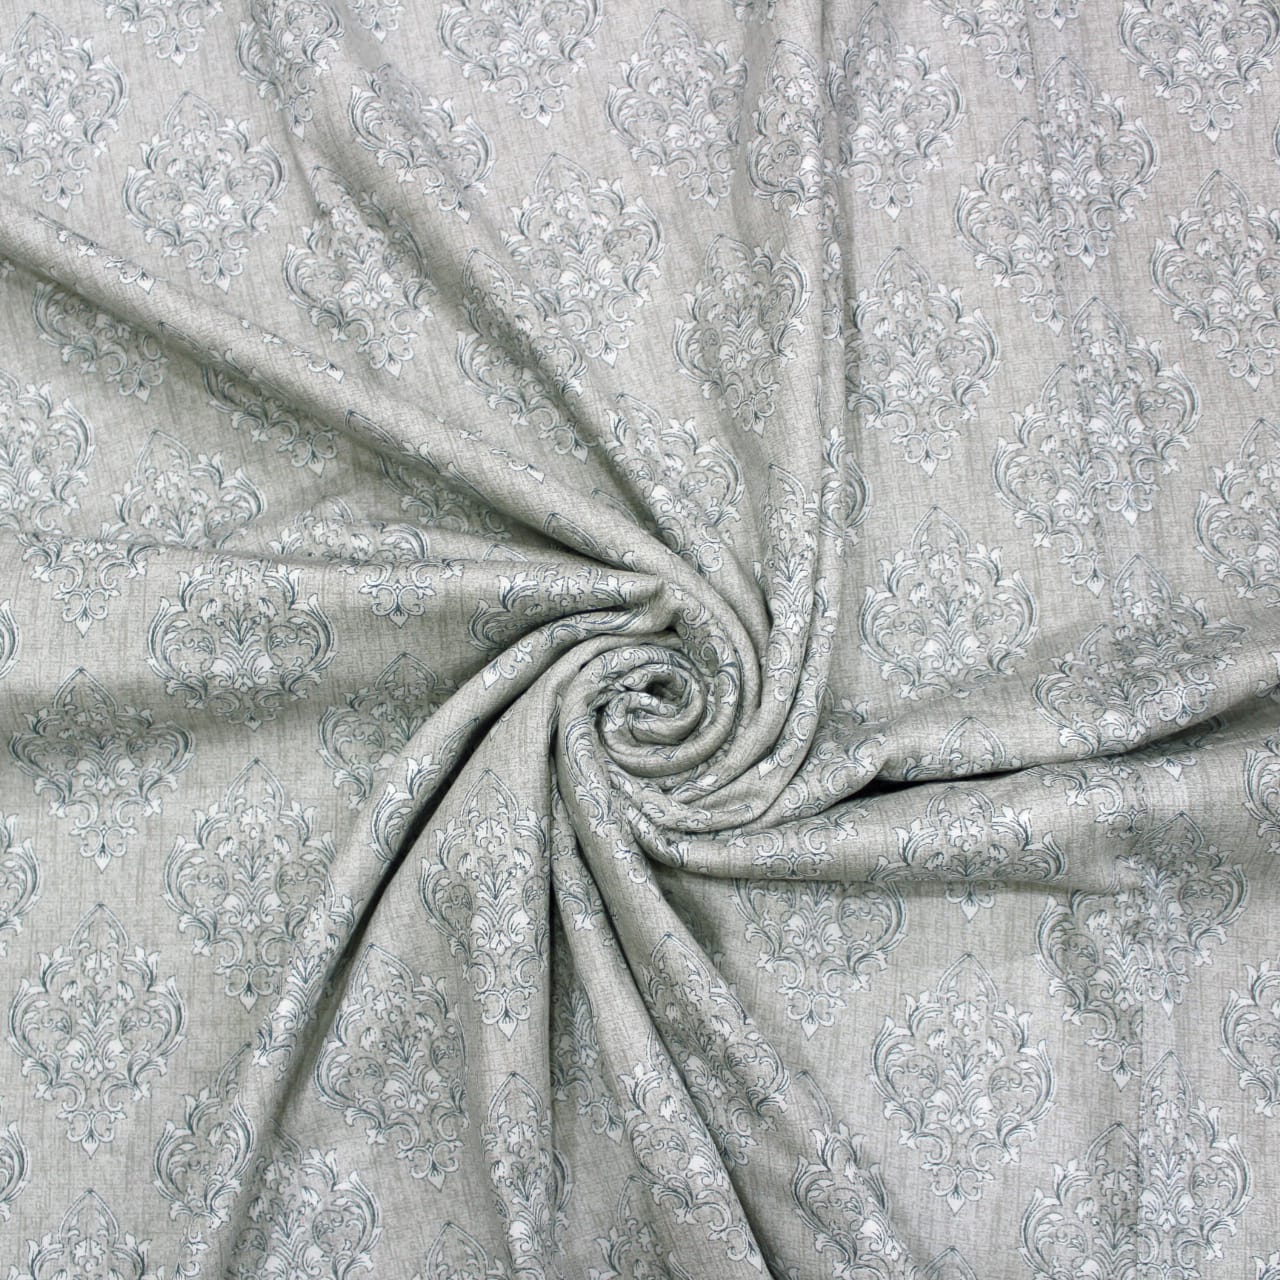 Riva Floral Cotton Dohar, Grey